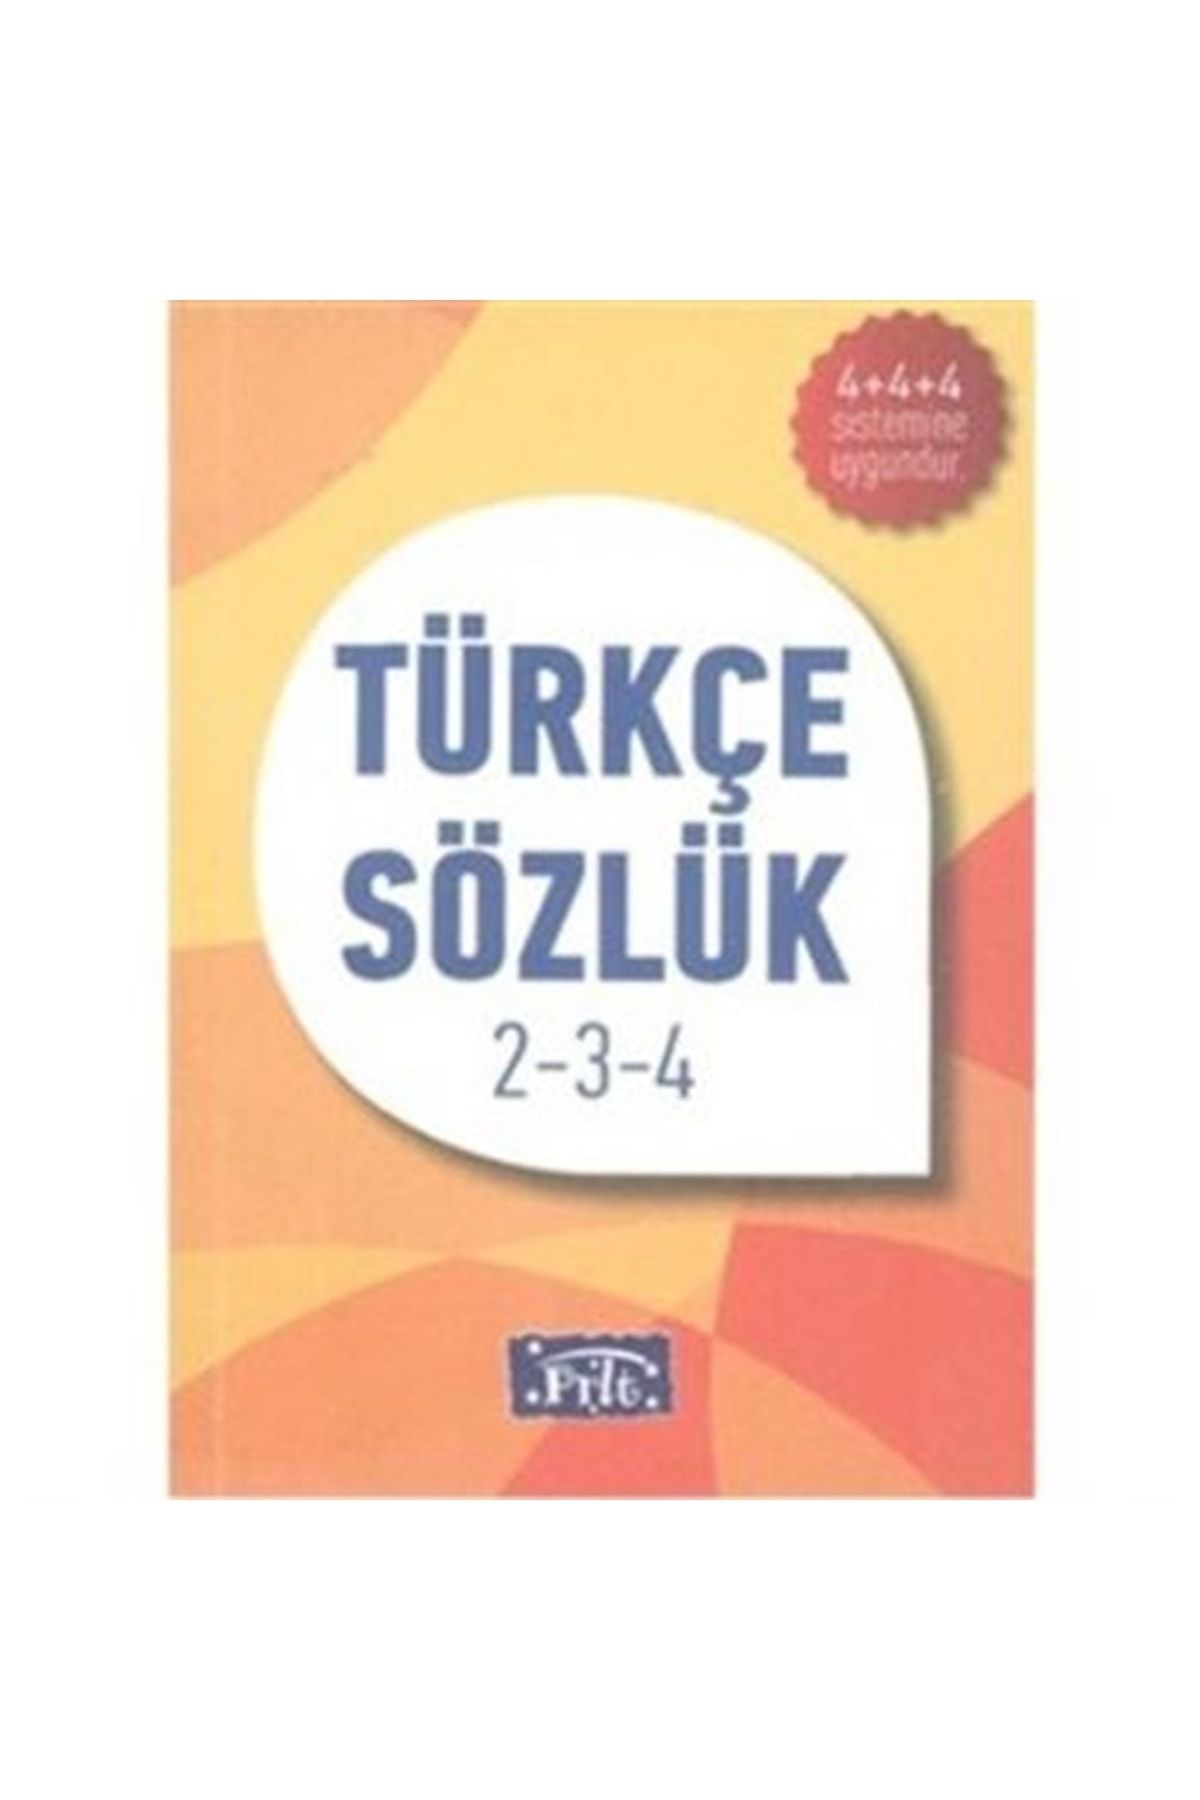 Parıltı Yayıncılık Ilköğretim Türkçe Sözlük Karton Kapak 2-3-4